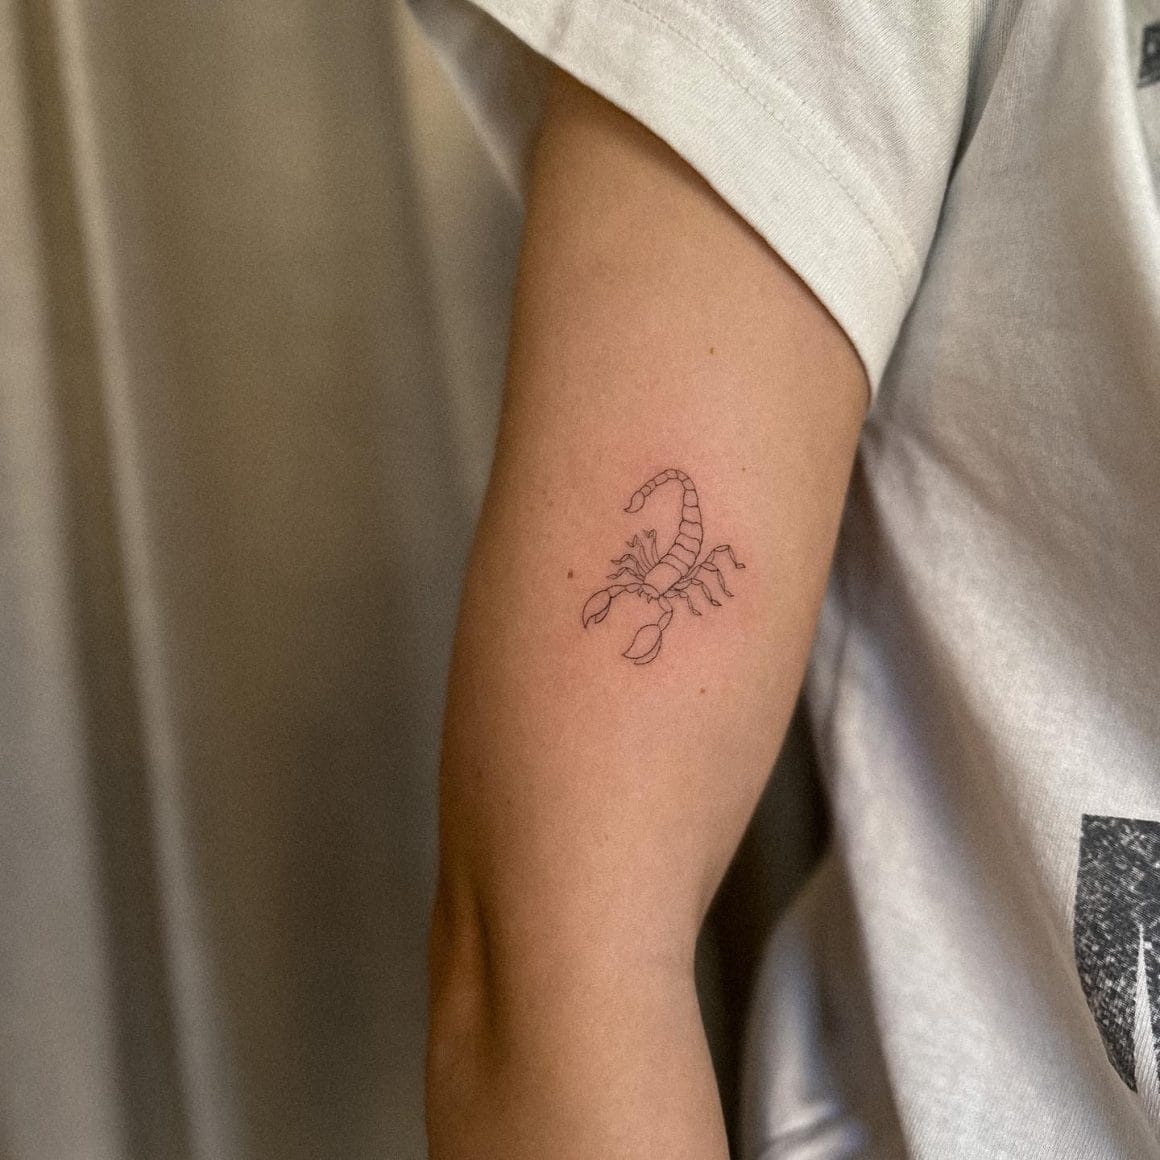 Minimalist Scorpio zodiac symbol tattoo on the wrist.